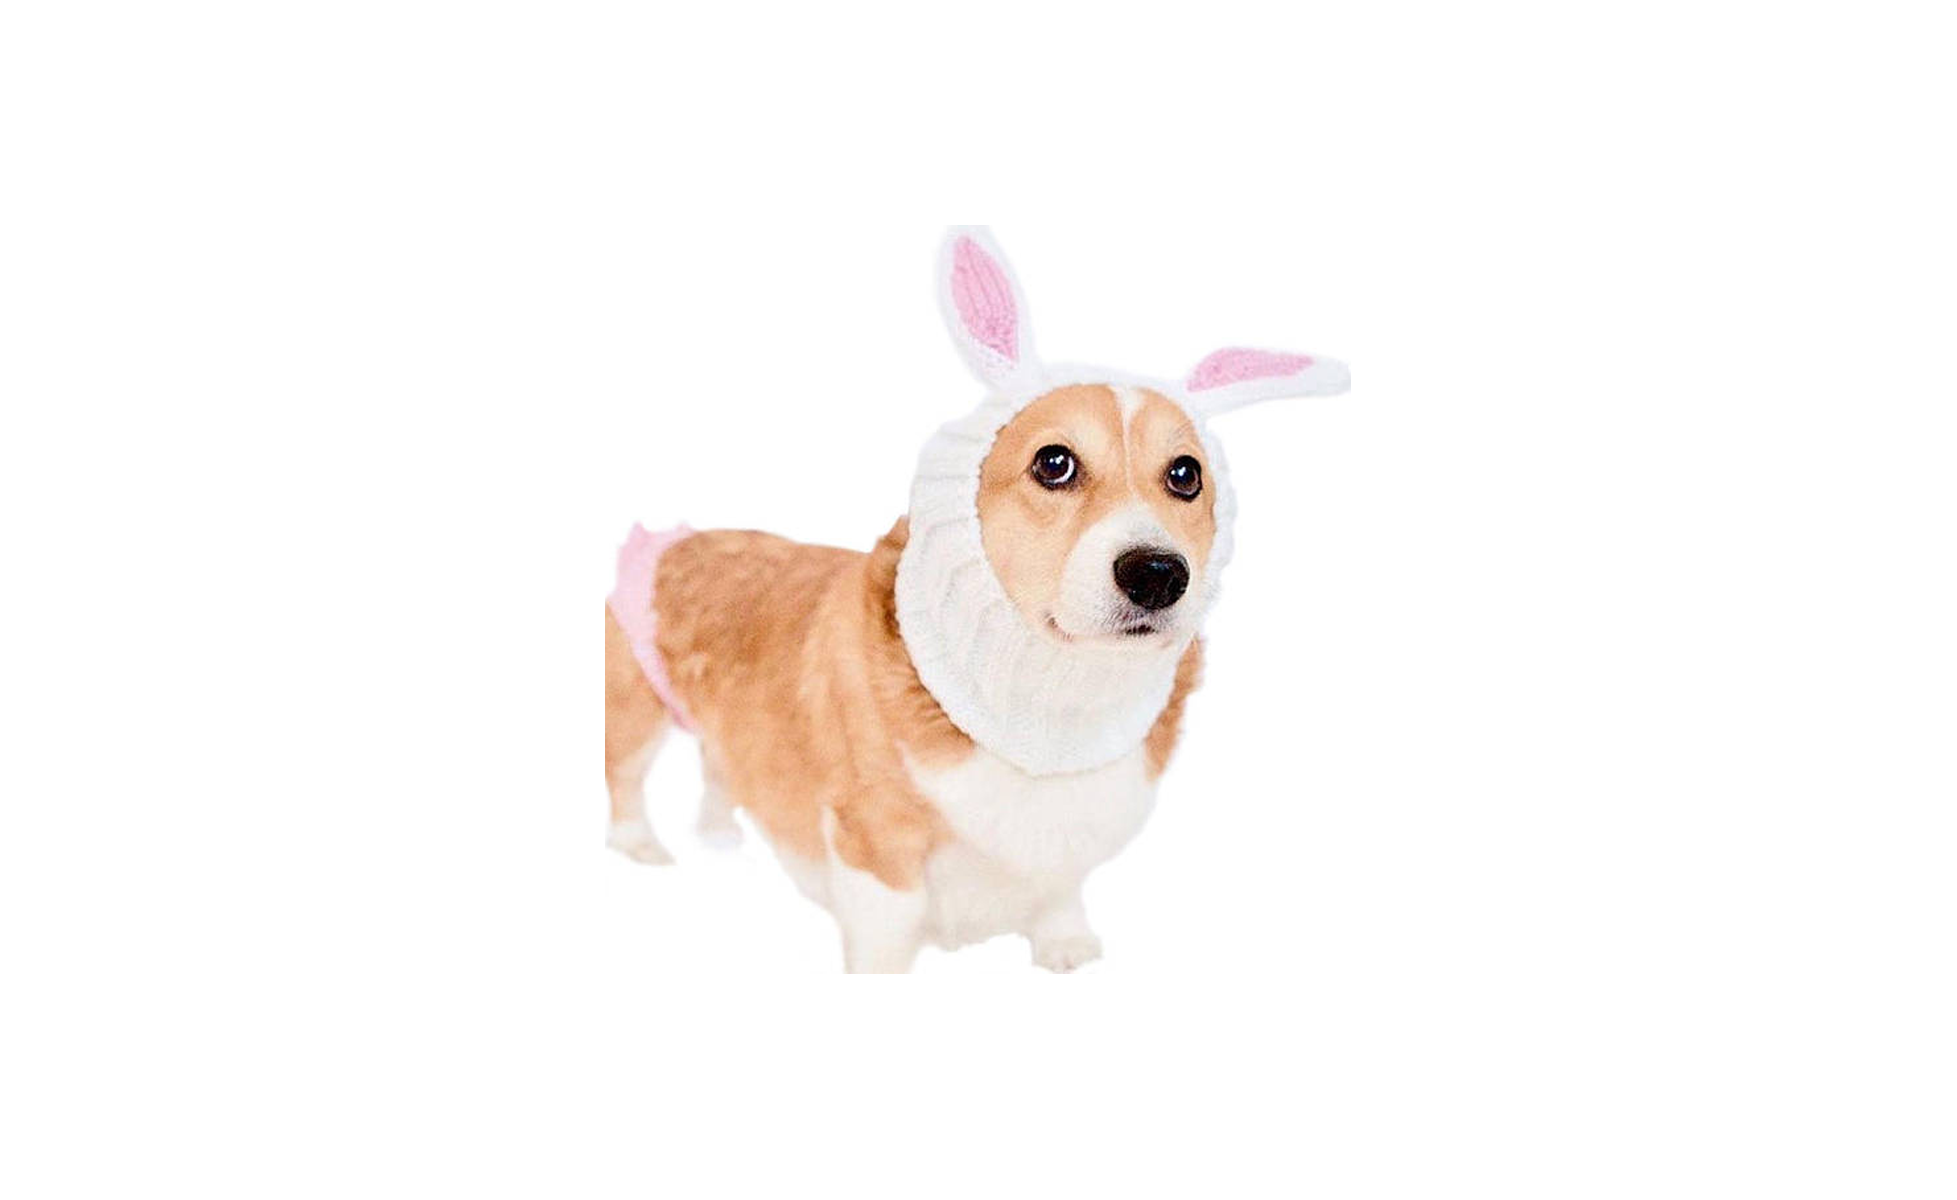   Bunny Dog Costume on Etsy  